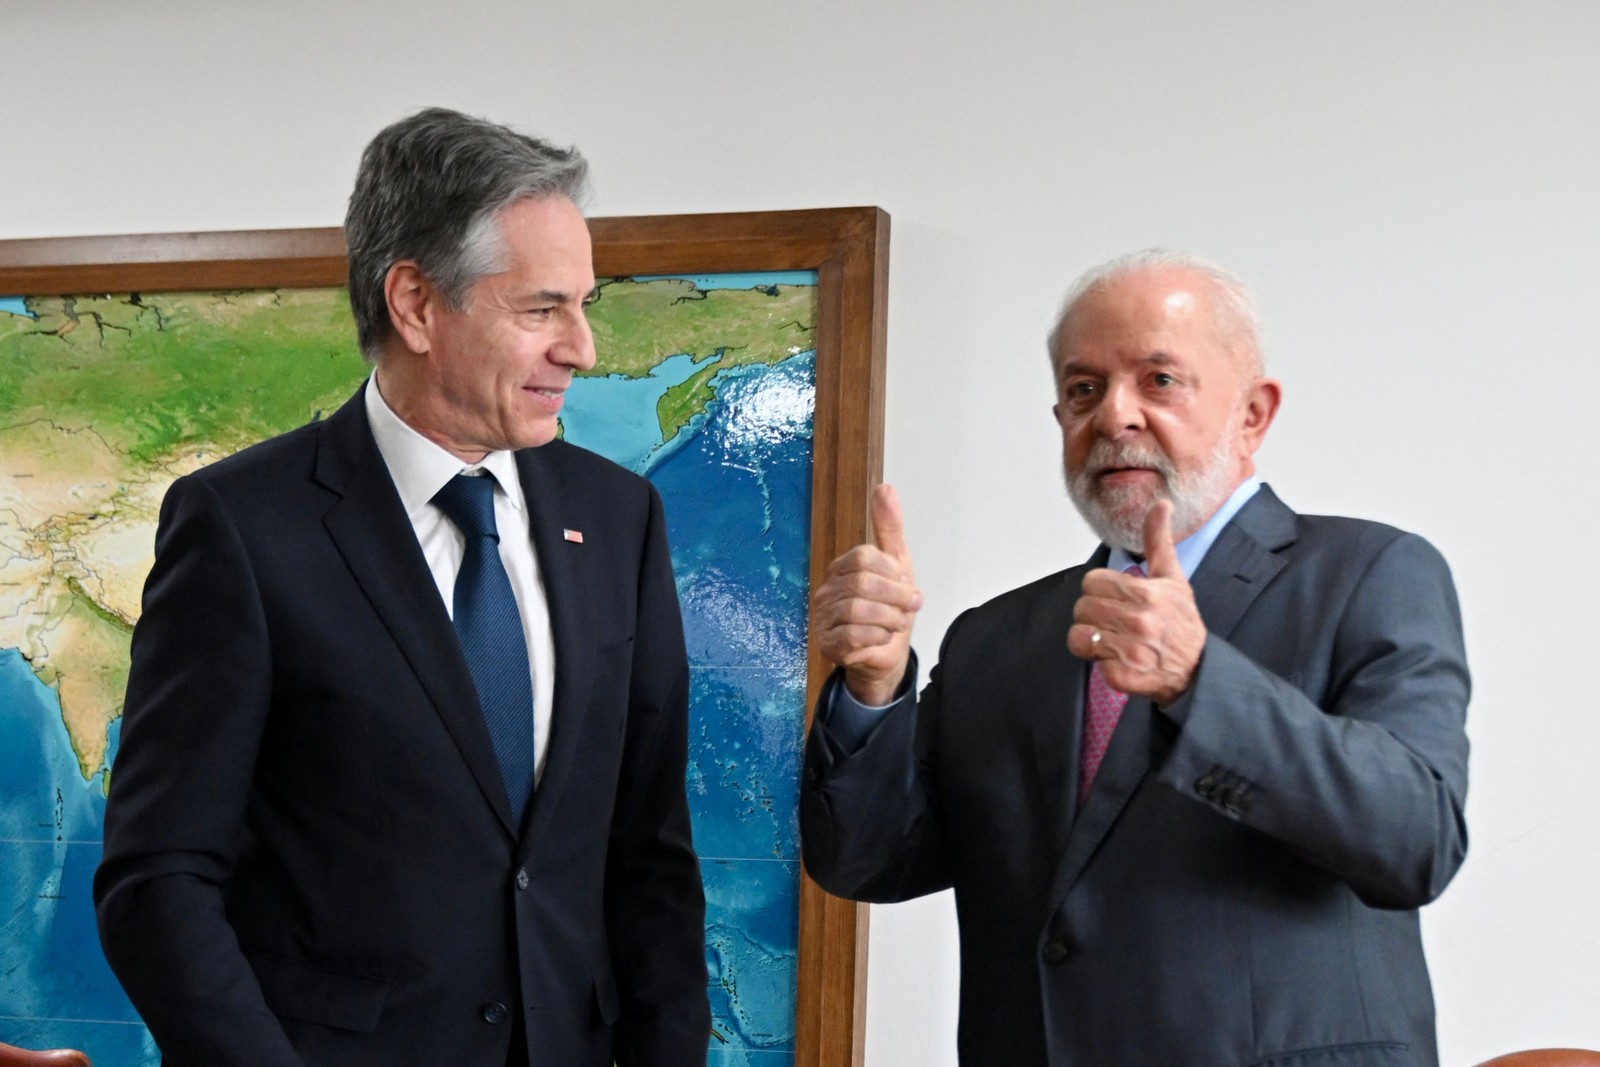 'Vamos trabalhar juntos', diz Antony Blinken após reunião com Lula no Planalto — Foto: EVARISTO SA / AFP